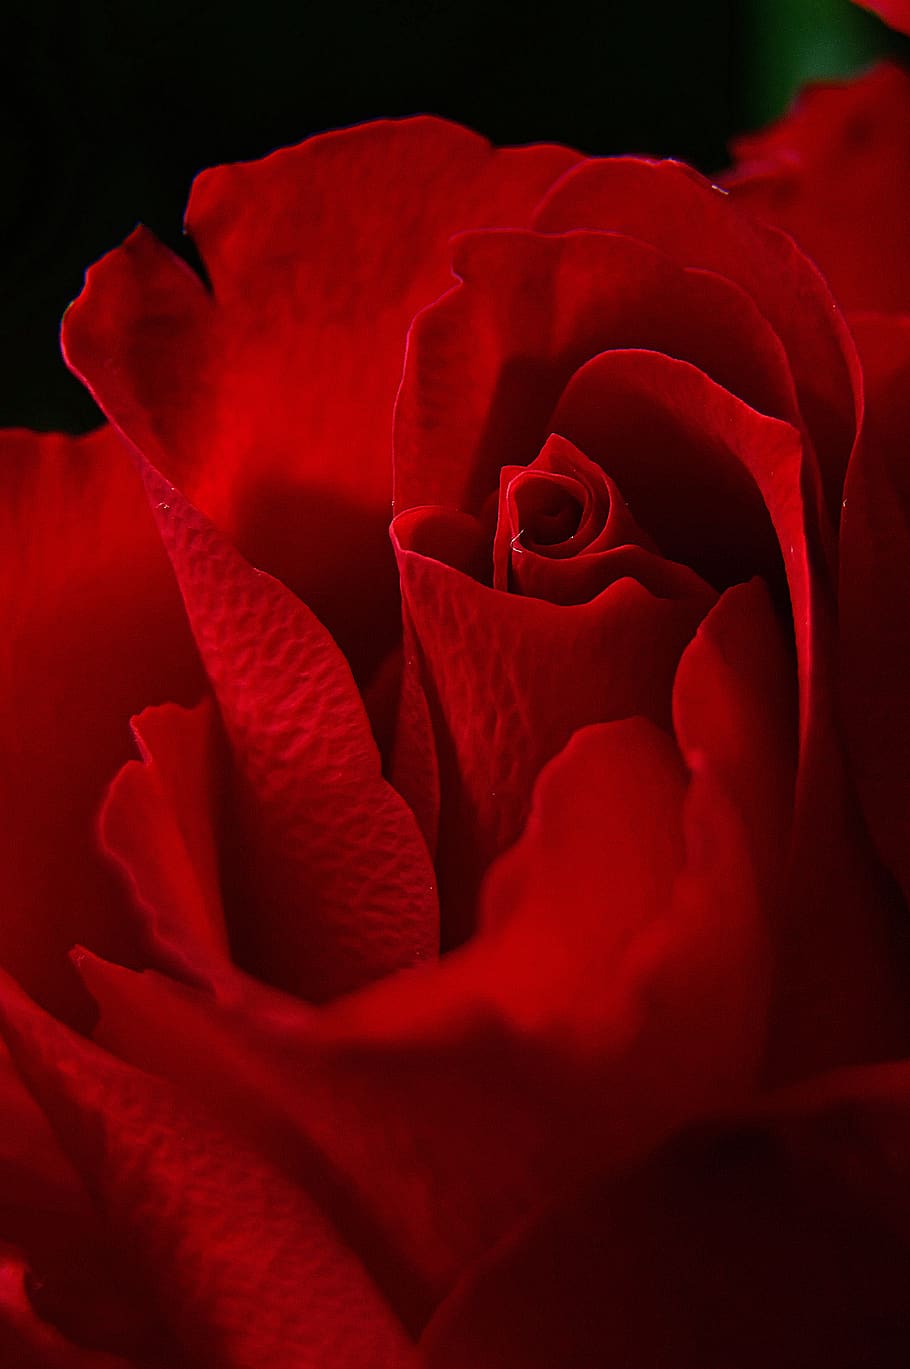 HD wallpaper: rose, rose petals, red rose, romantic, love, romance ...